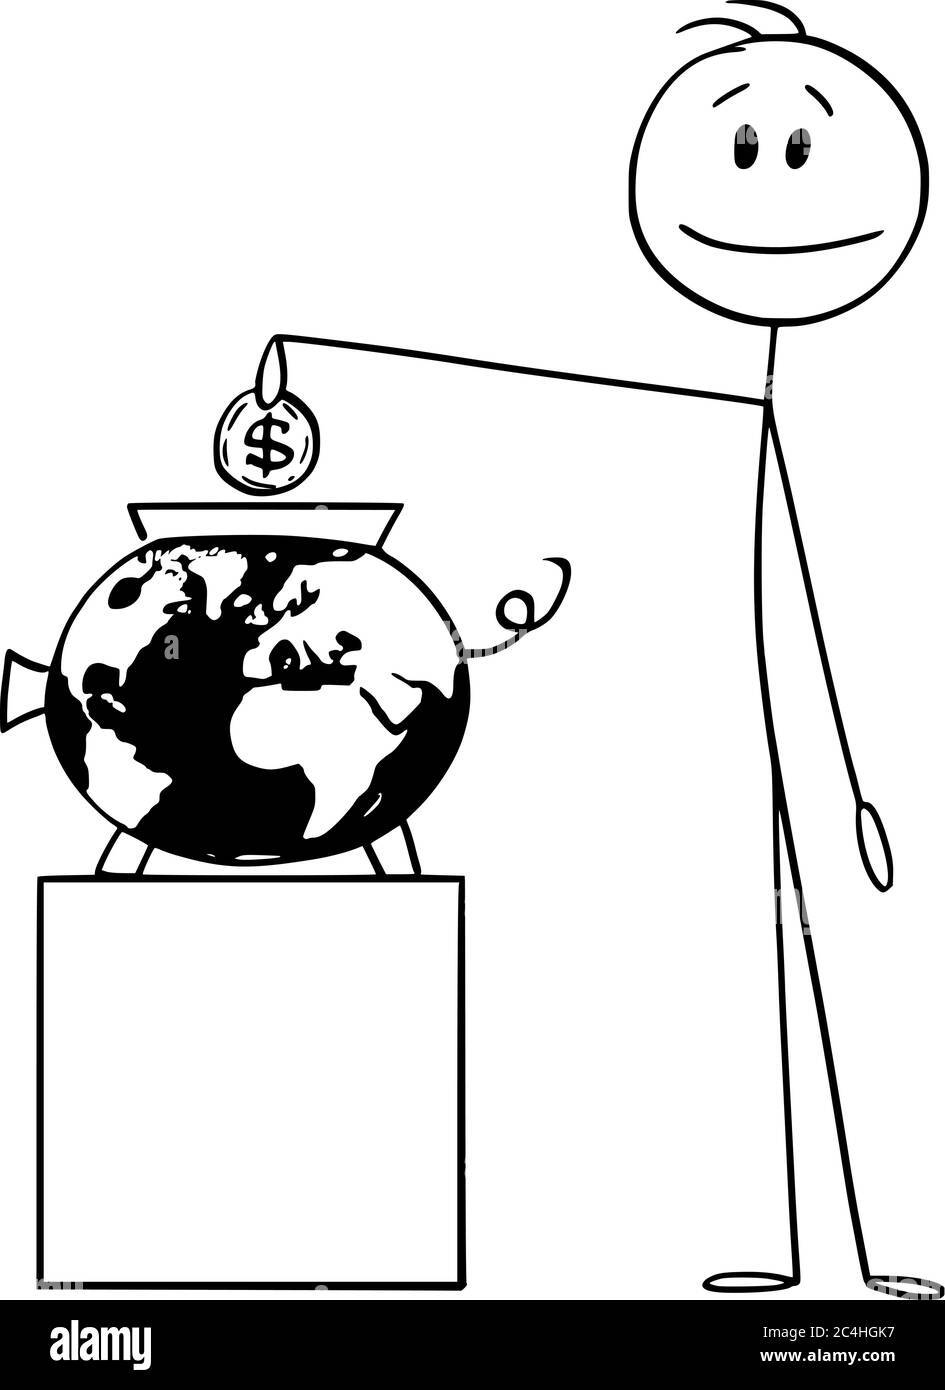 Grafico vettoriale del cartoon disegno illustrazione concettuale di uomo o uomo d'affari che mette la moneta a una banca piggy che rappresenta il globo, la Terra o il mondo. Investire nel futuro globale. Illustrazione Vettoriale